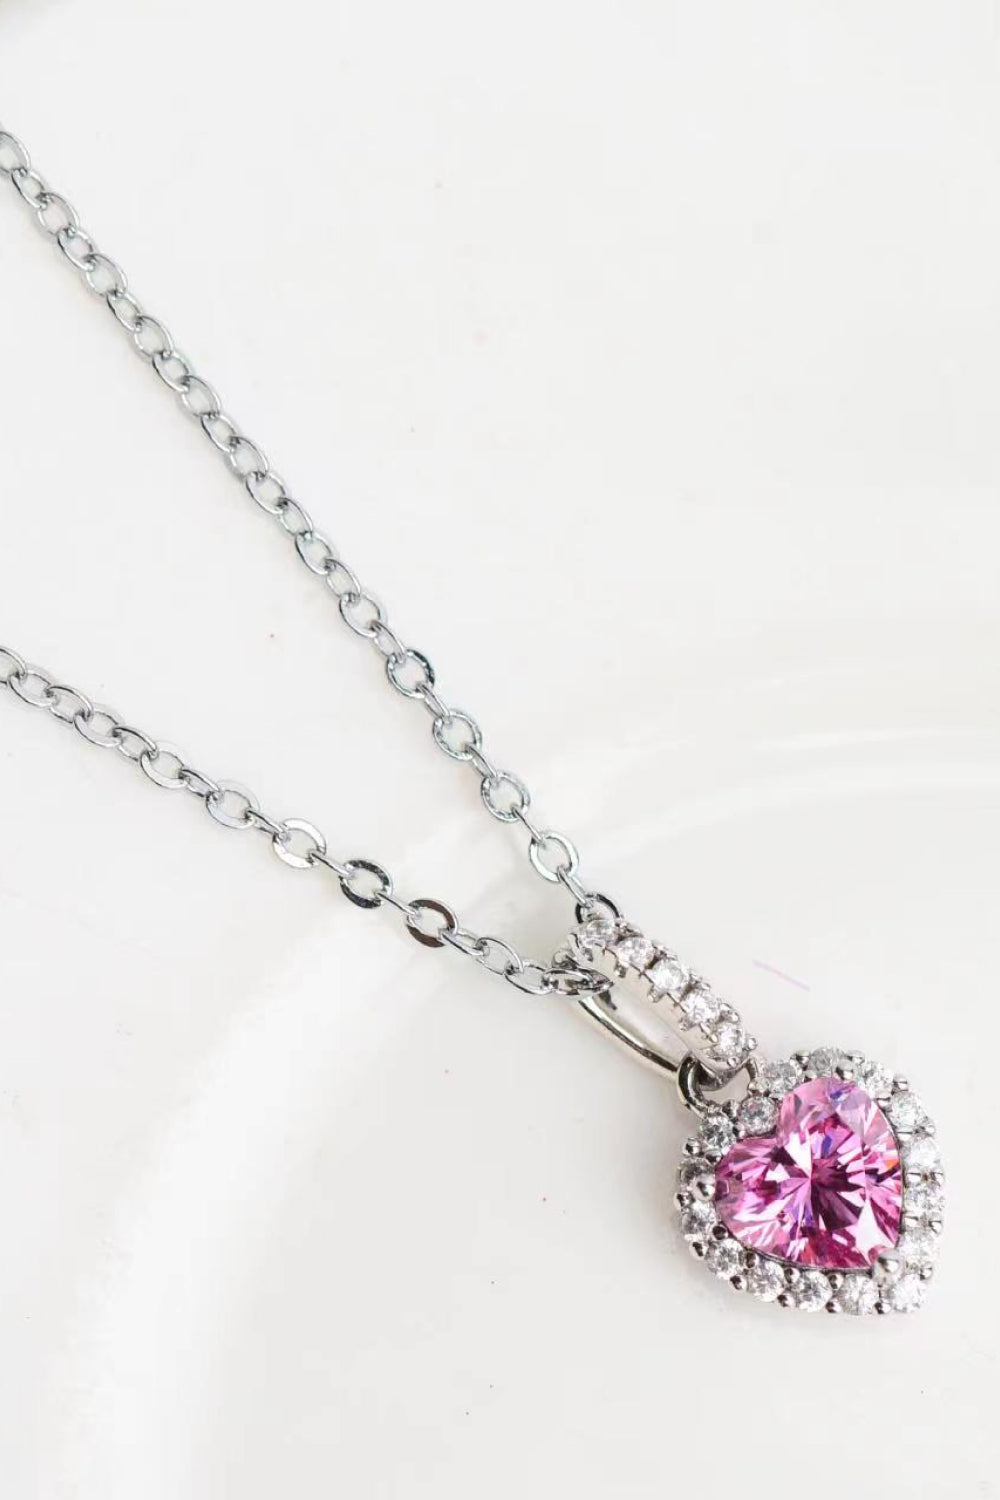 1 Carat Moissanite Heart Pendant Necklace - DromedarShop.com Online Boutique